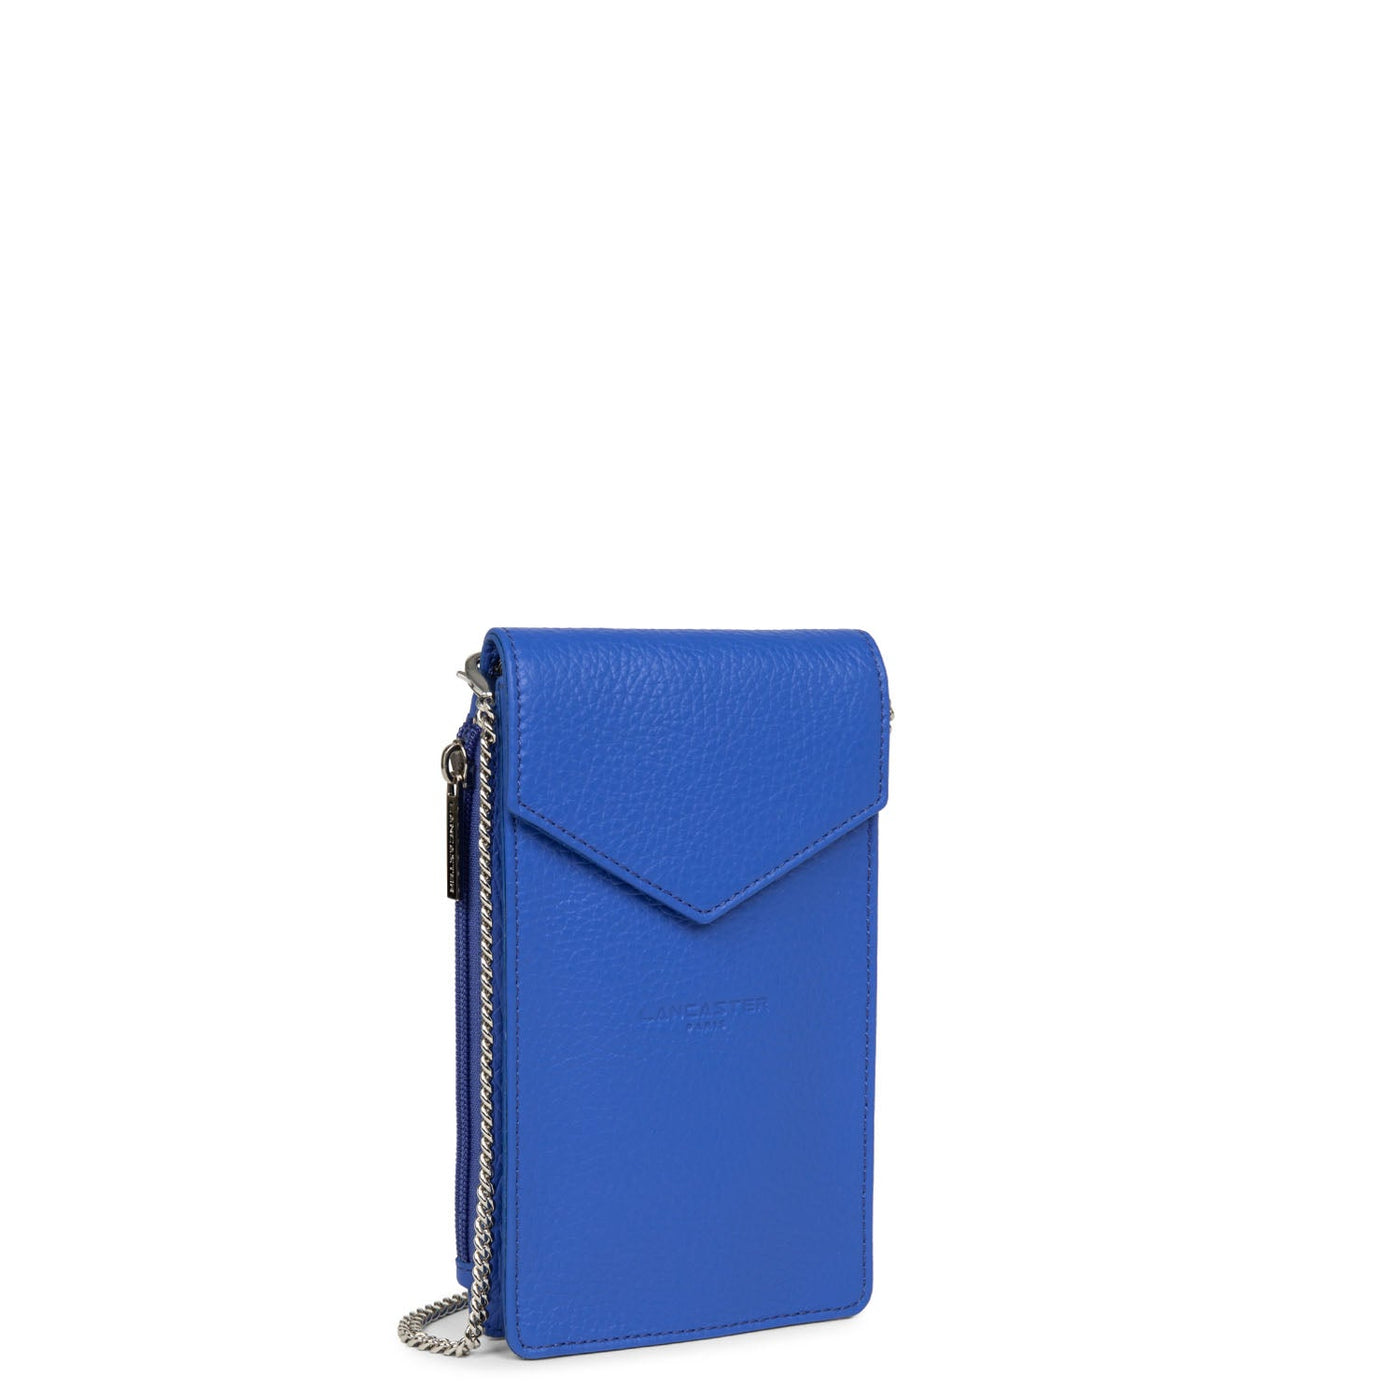 smartphone holder - foulonné pm #couleur_bleu-roi